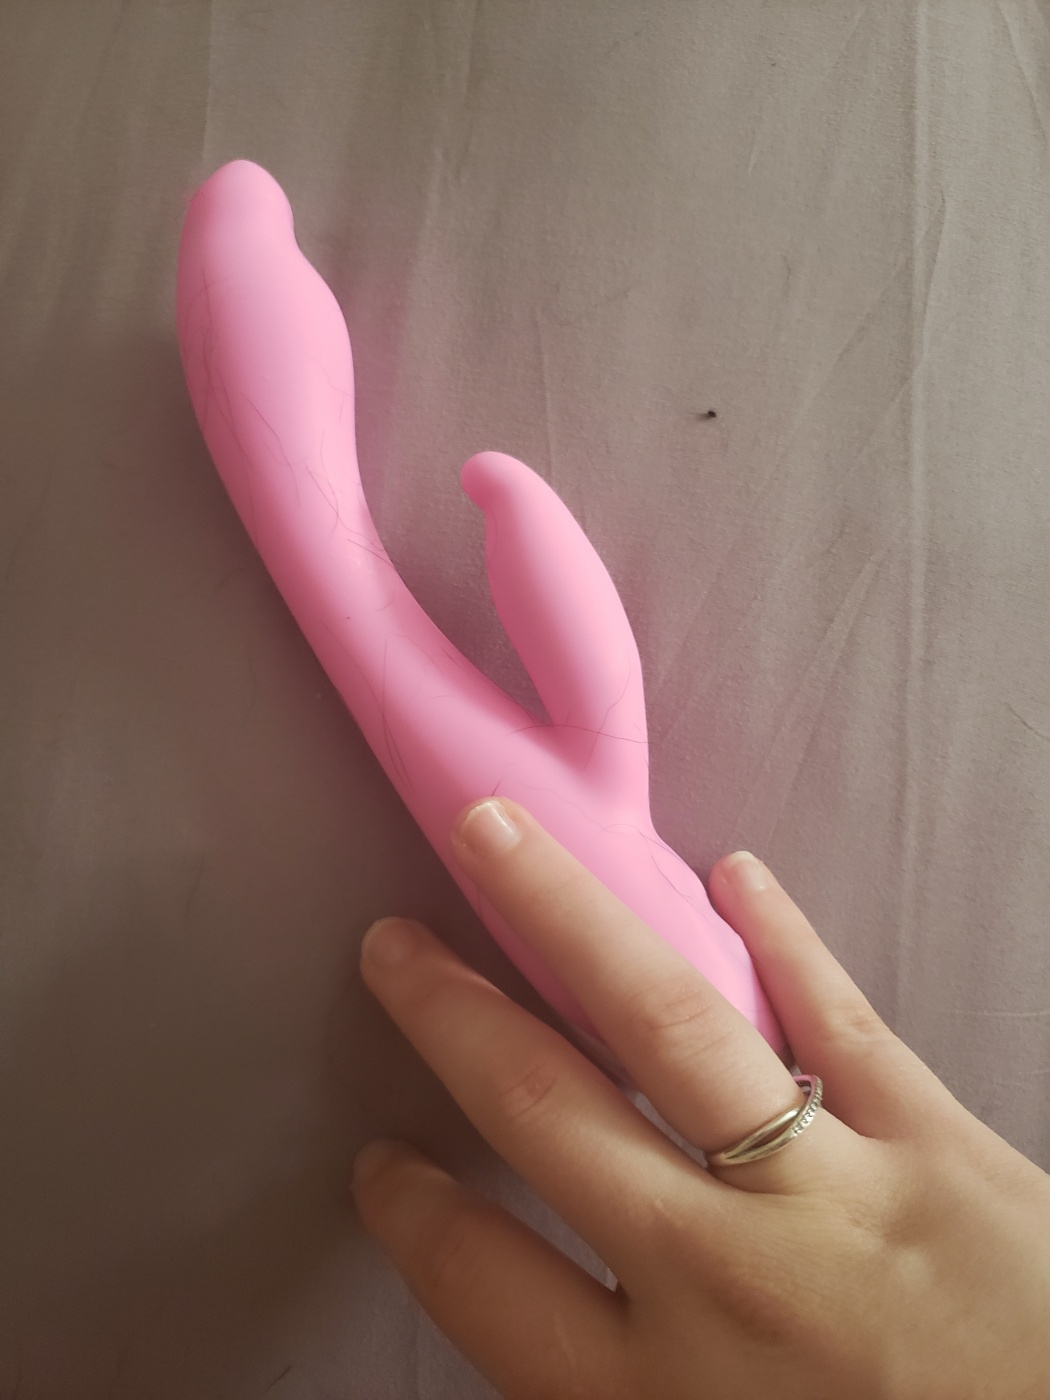 Vergin girls sex toy